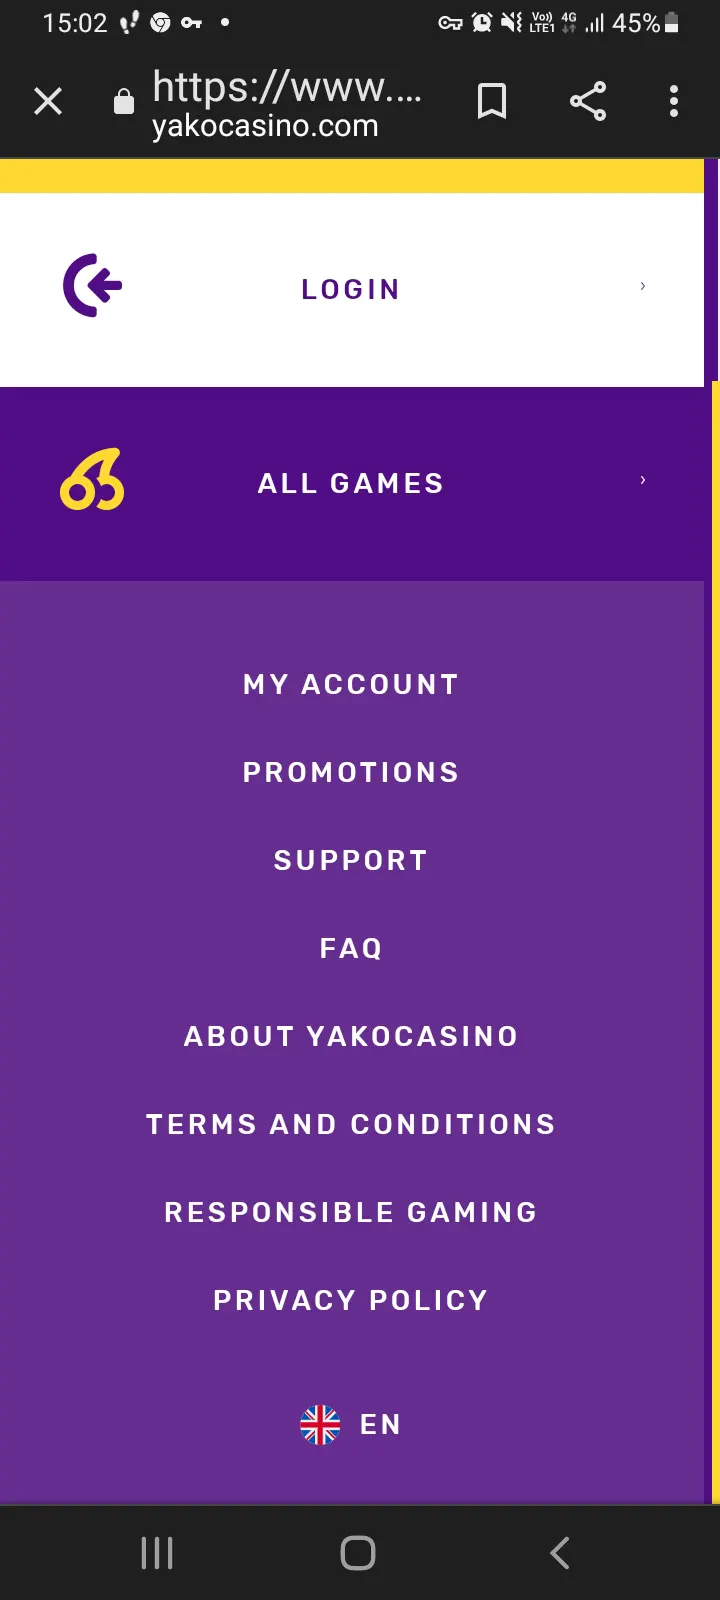 Yako casino app screenshot 11